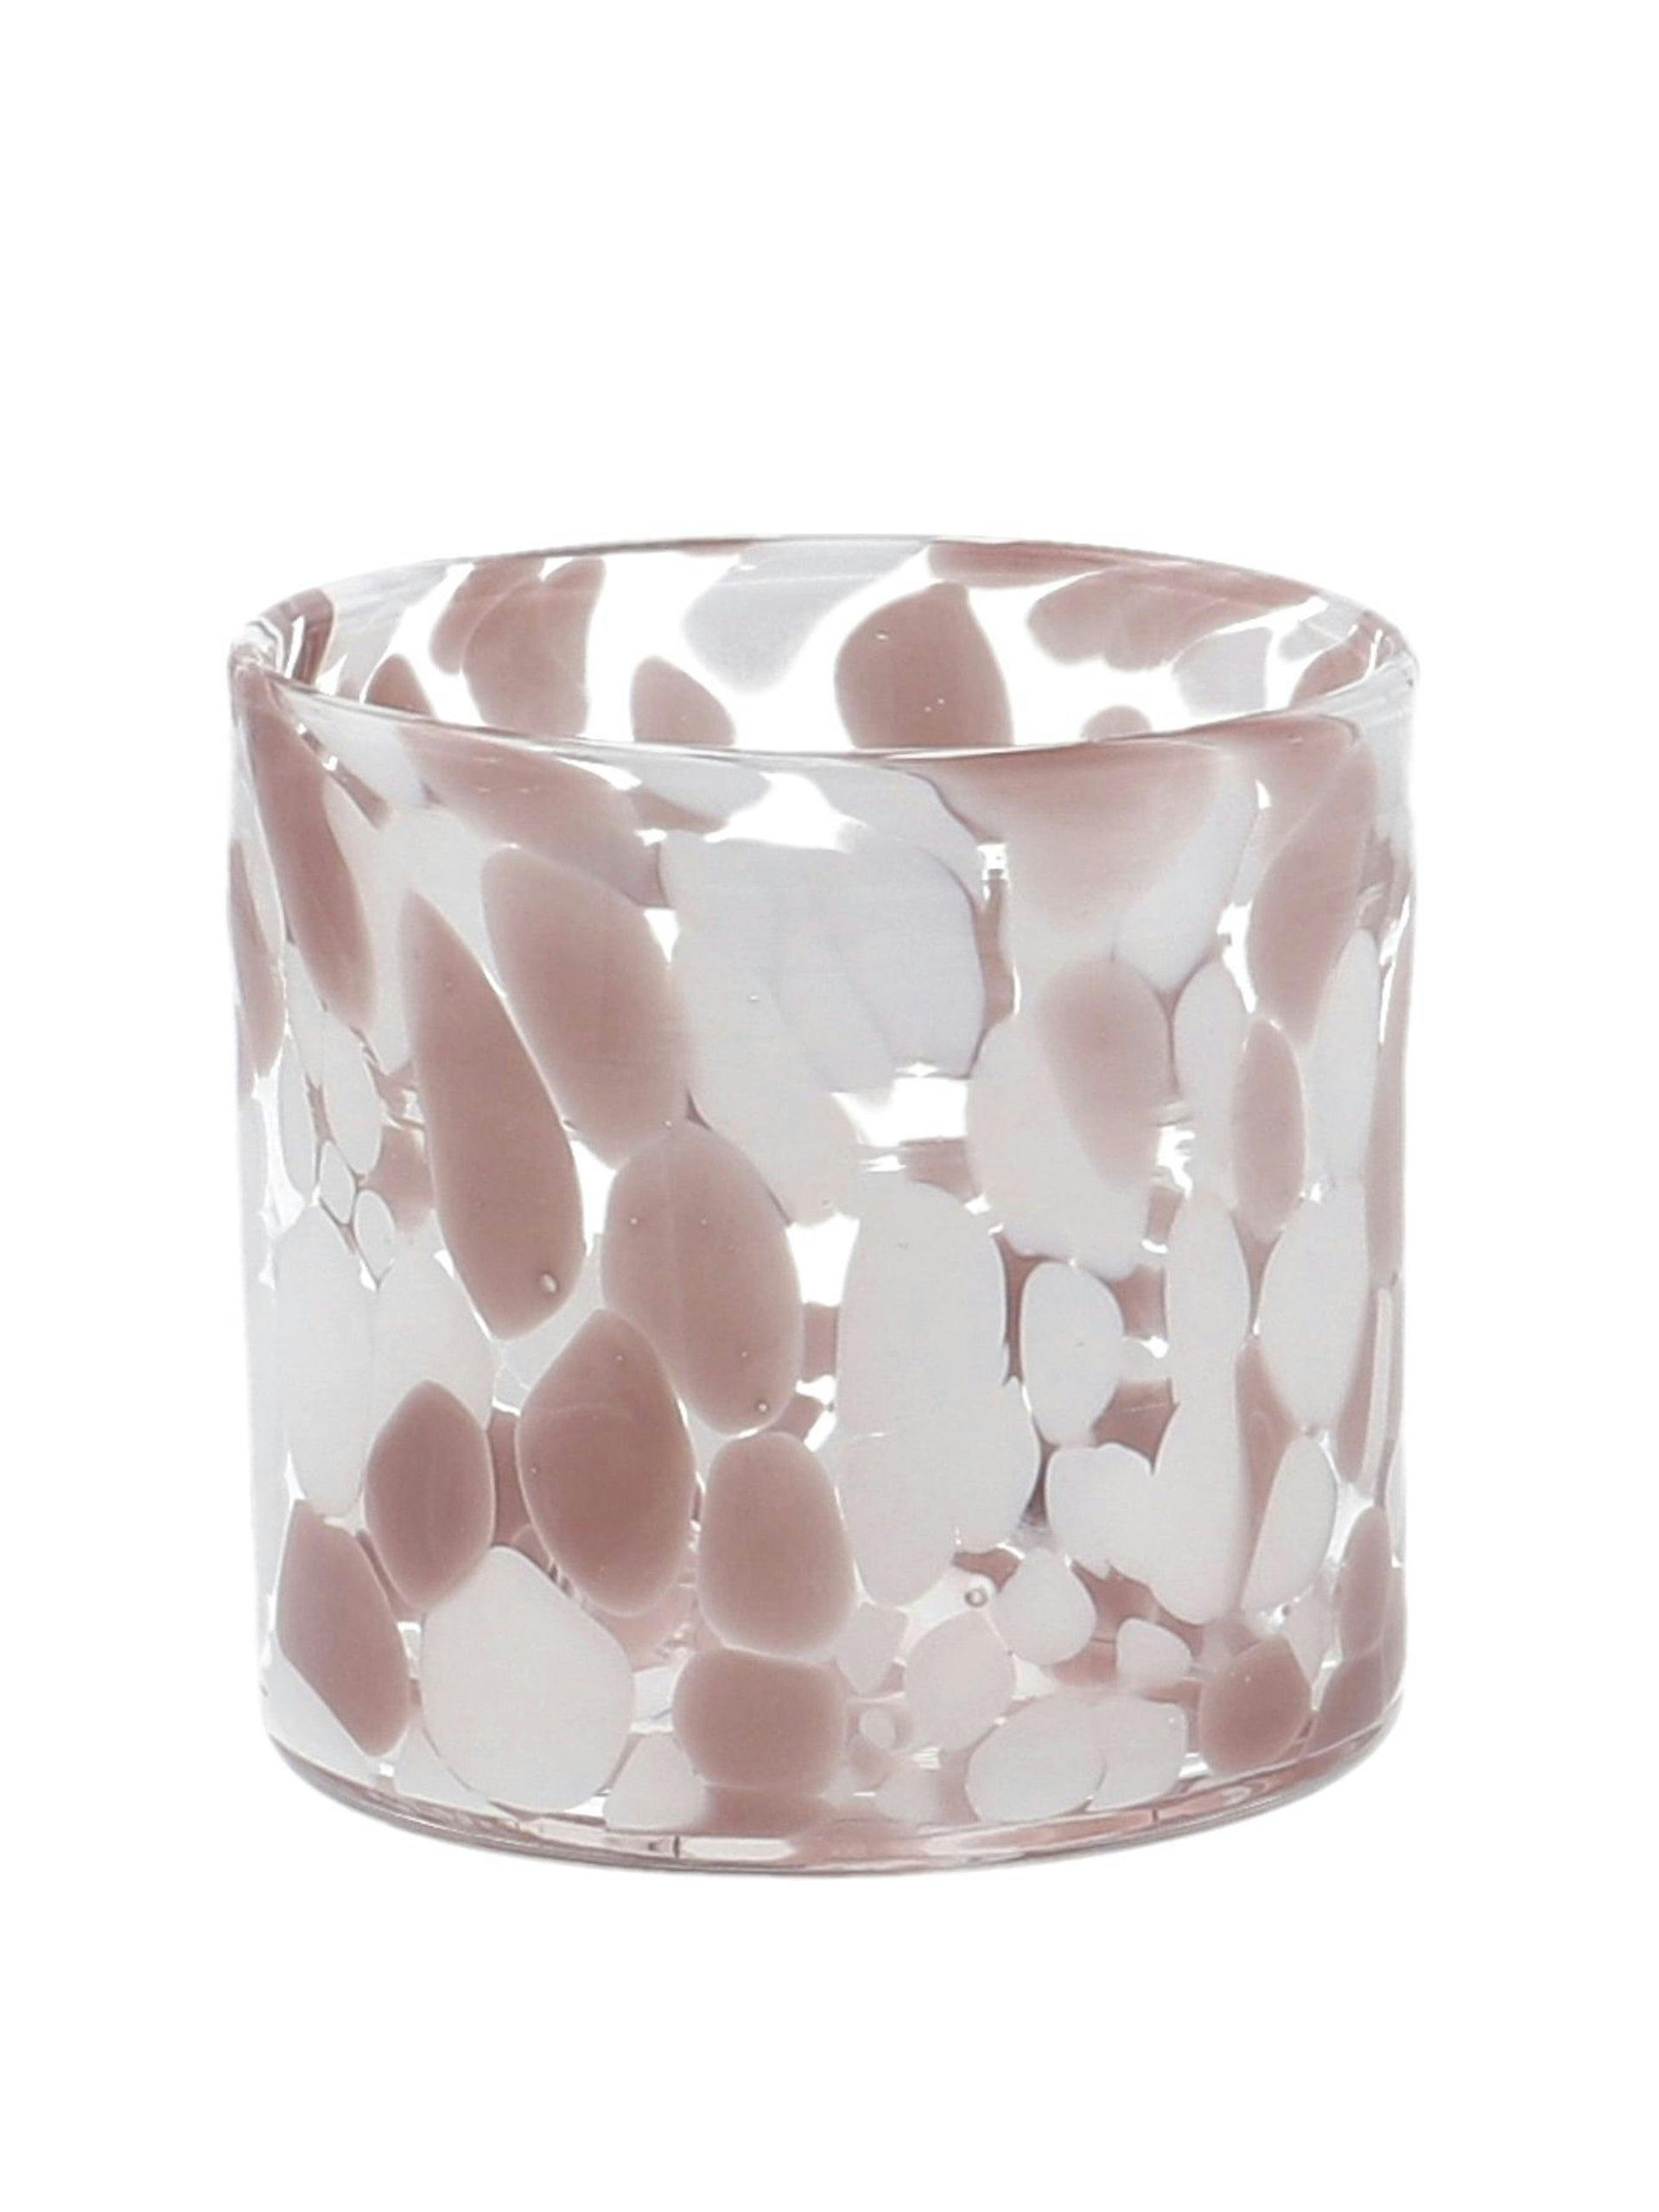 Pink glass tealight holder